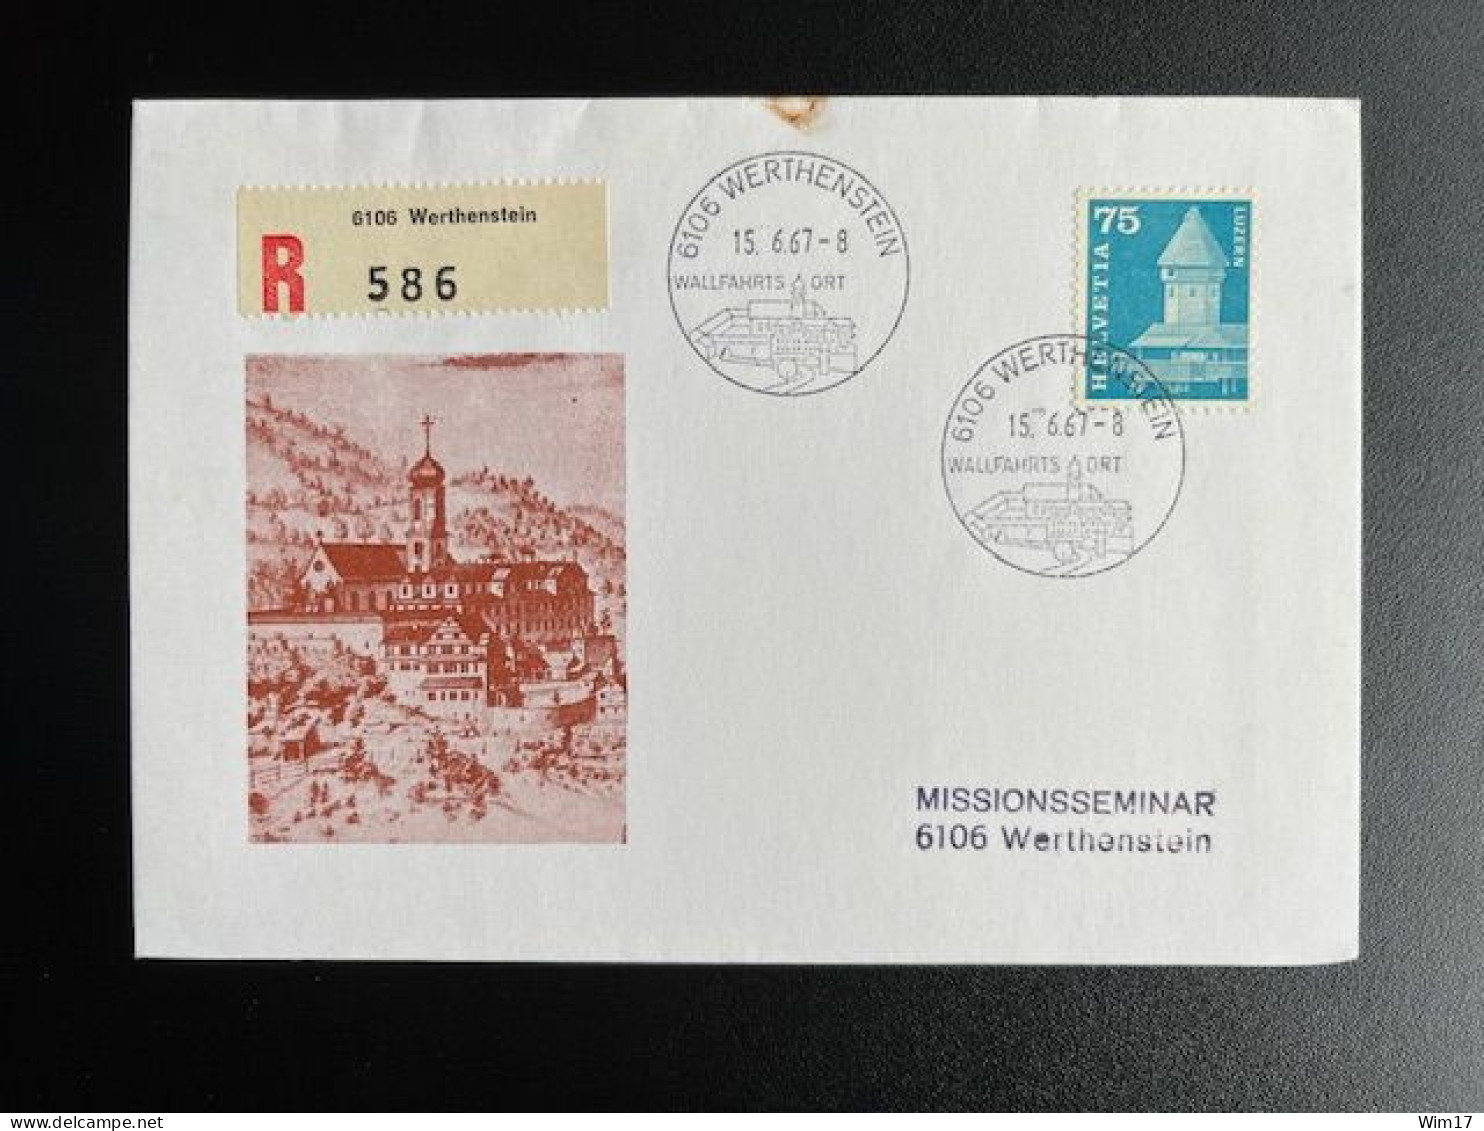 SWITZERLAND 1967 REGISTERED COVER WERTHENSTEIN 15-06-1967 ZWITSERLAND SUISSE SCHWEIZ EINSCHREIBEN RECOMMANDE - Briefe U. Dokumente